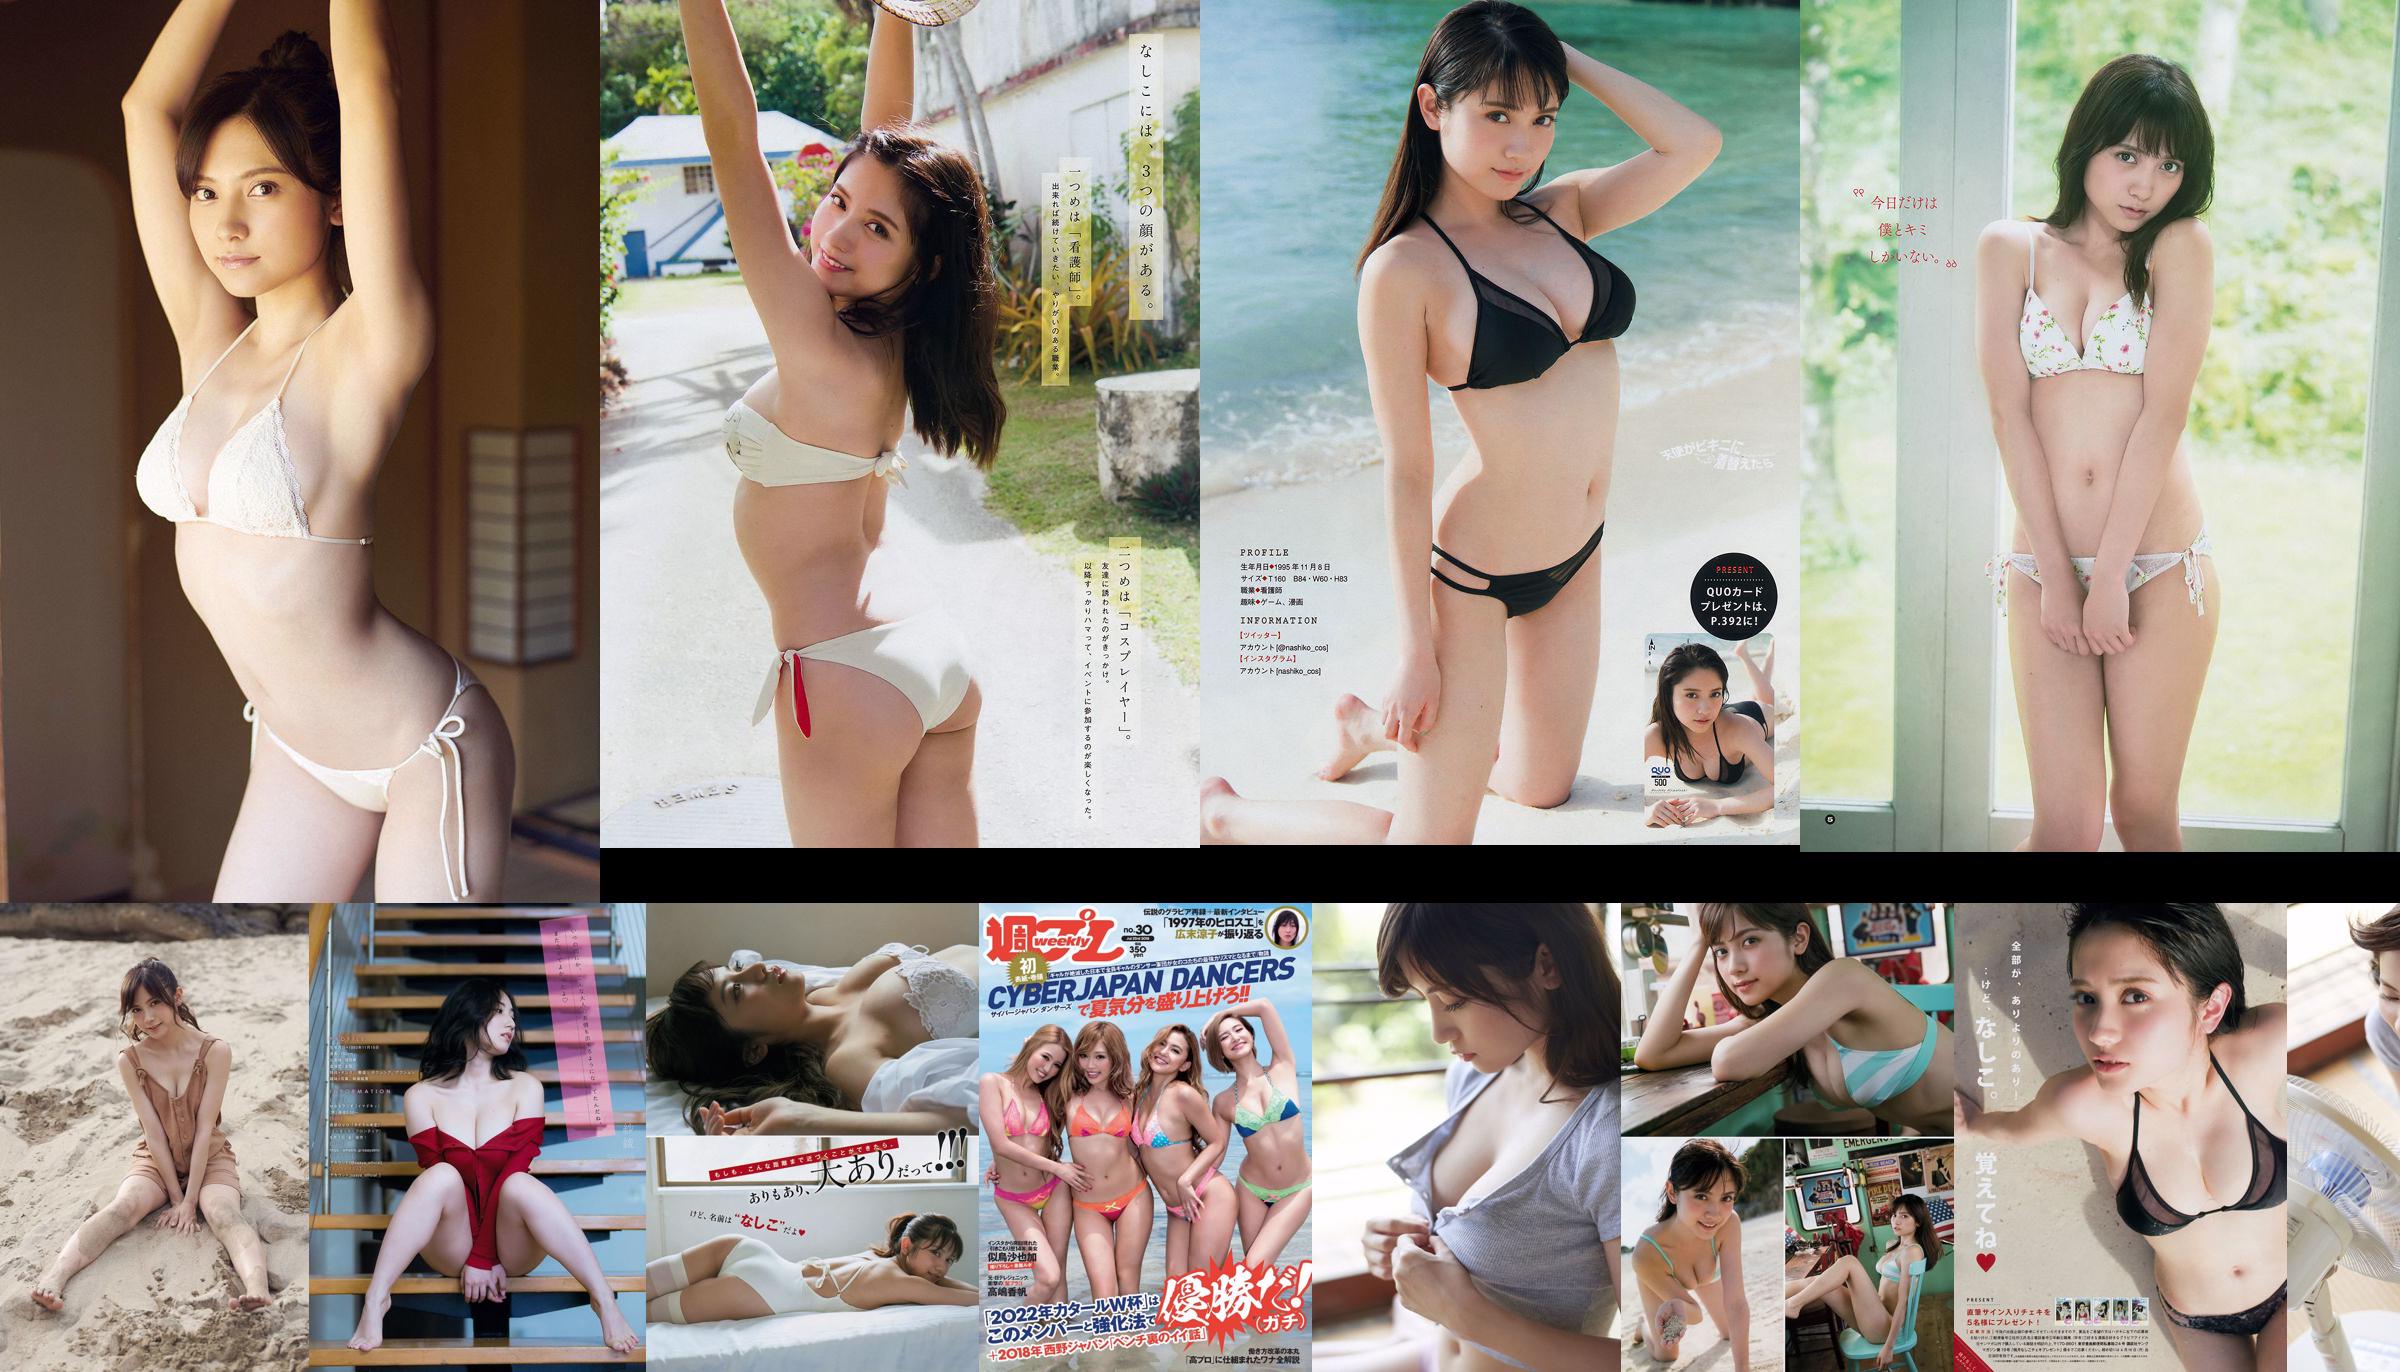 Nashiko Momotsuki Yuka Sugai Natsumi Ikema Raw Oyster Imoko Sae Murase Mao Akutsu [Weekly Playboy] Foto No.23 2018 No.fc8070 Halaman 6